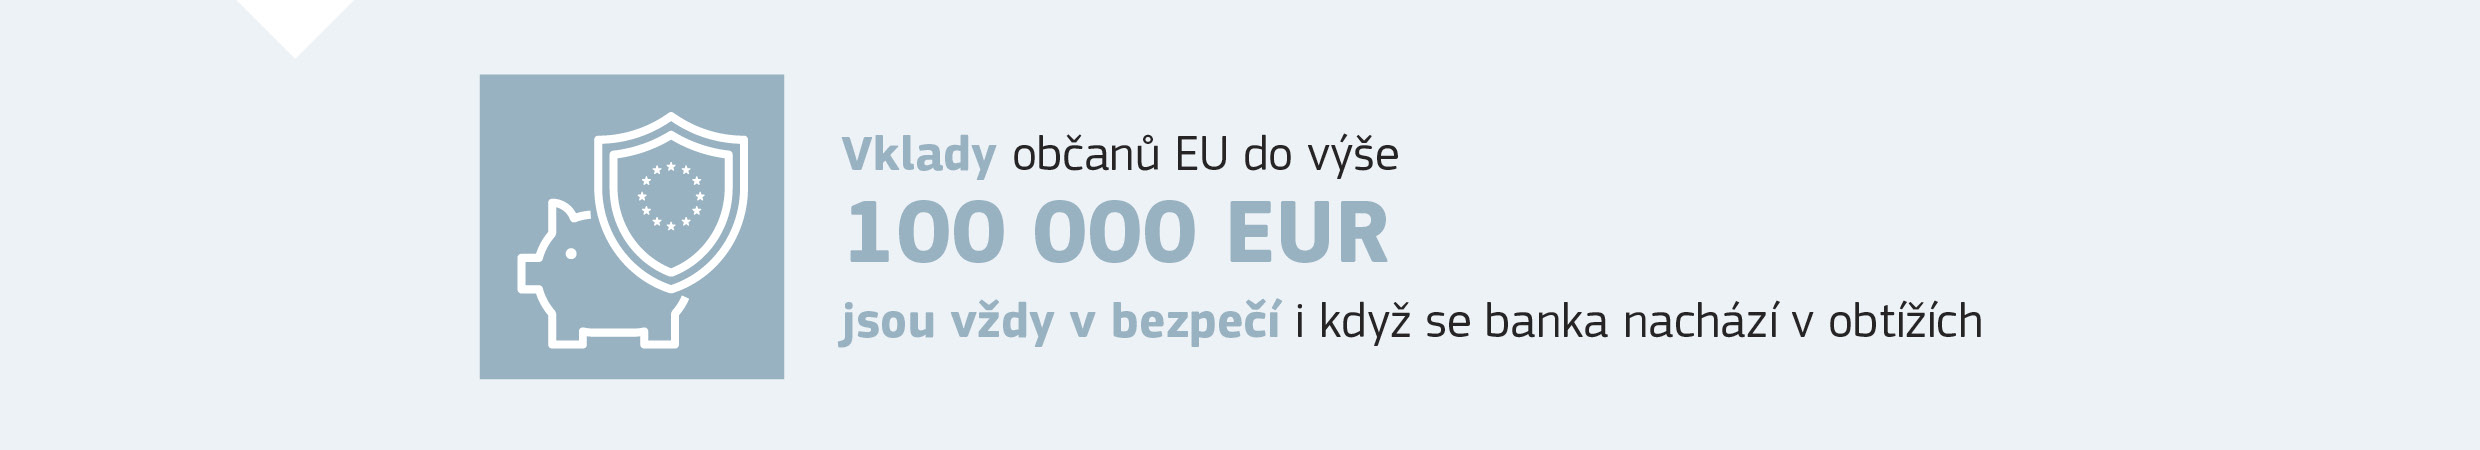 Vklady občanů EU do výše 100 000 EUR jsou vždy v bezpečí, i když se banka nachází v obtížích